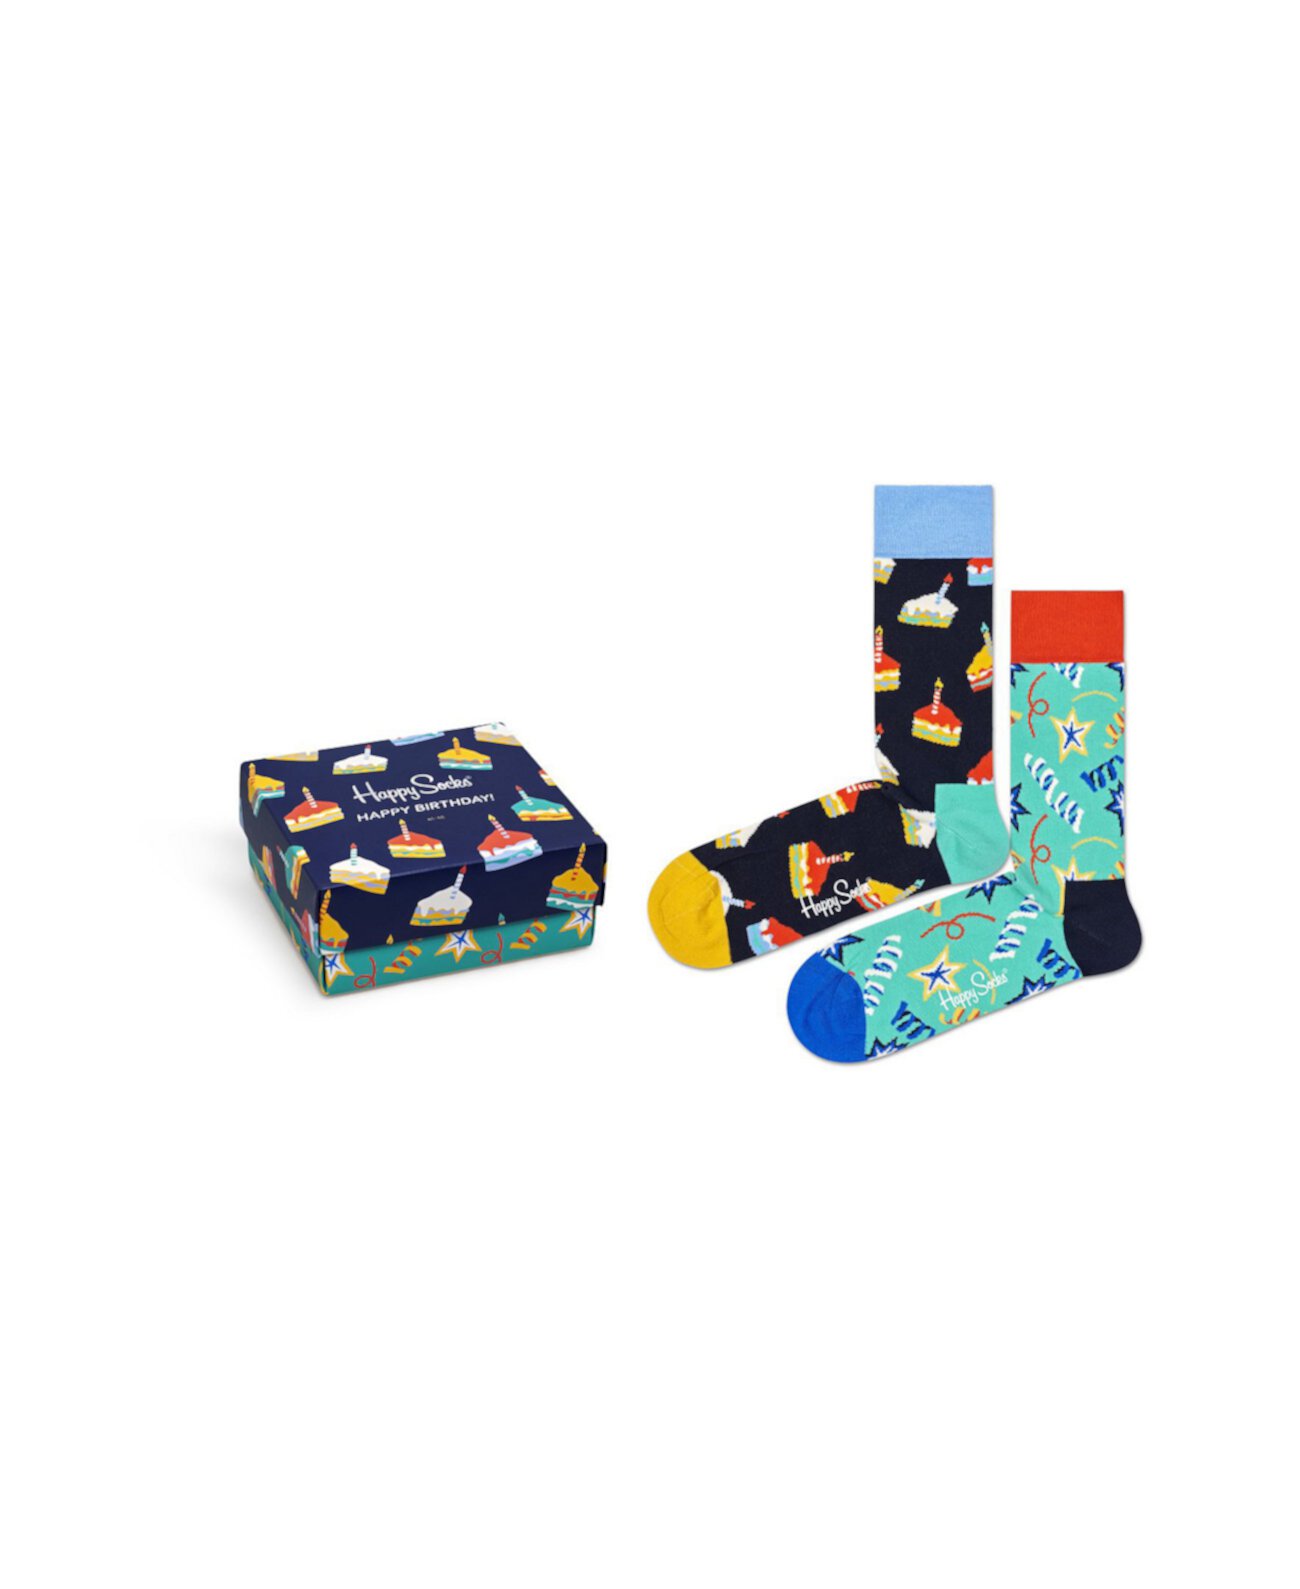 Мужские носки с подарками на день рождения, 2 шт. В упаковке Happy Socks